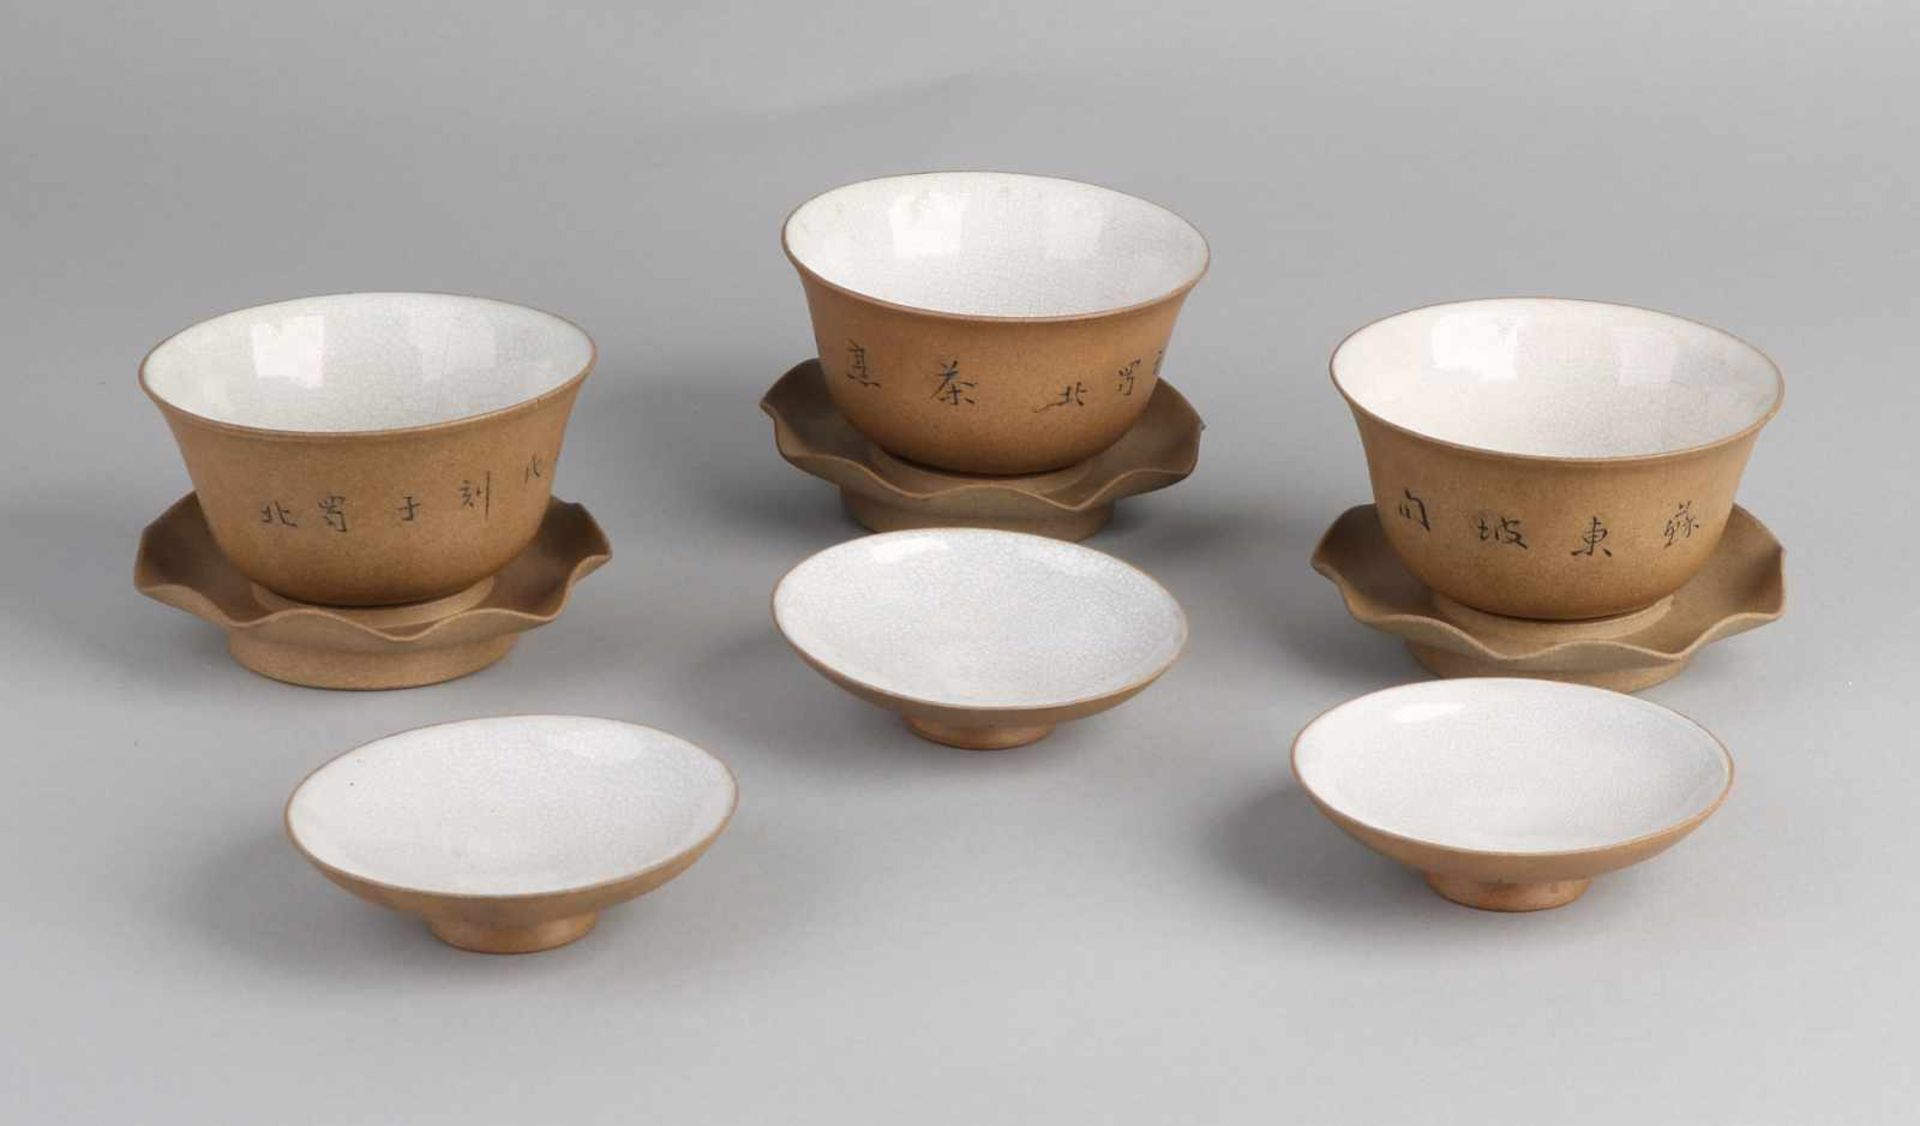 Drei separate dreiteilige Tassen aus chinesischem Porzellan mit Teeglasur und Reißverschlusstext. - Bild 2 aus 2